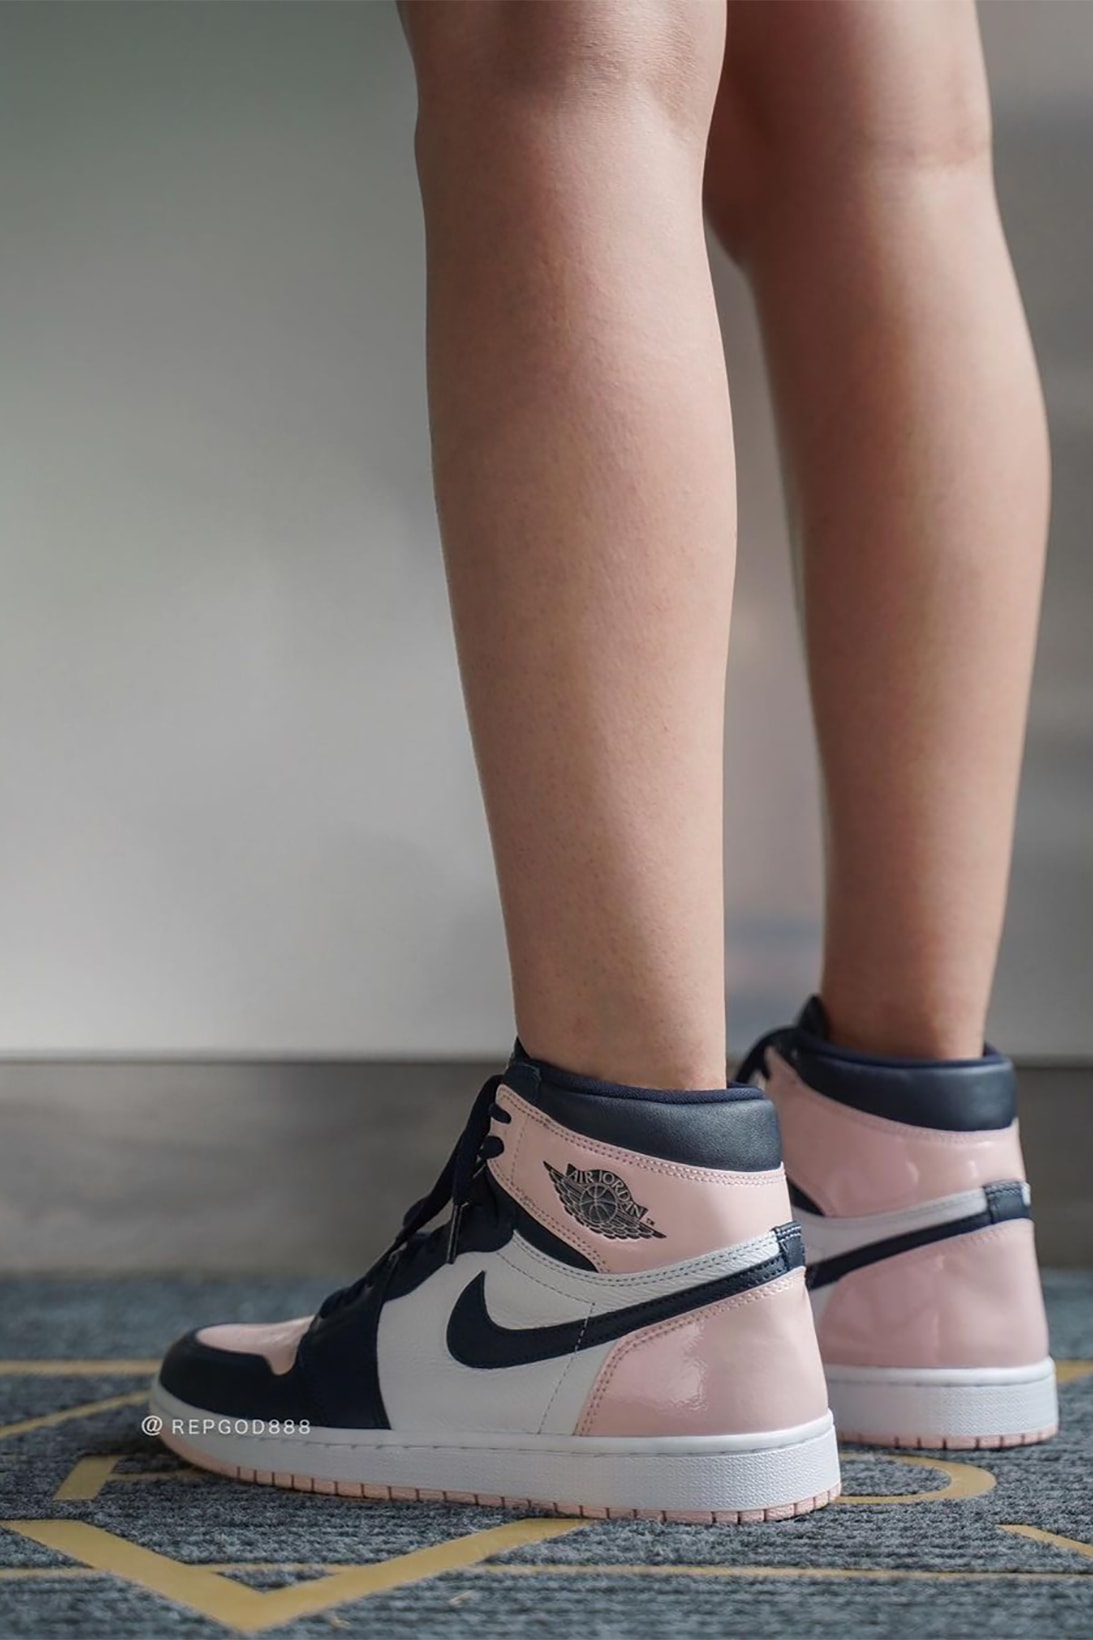 Nike Air Jordan 1 High Atmosphere Womens Exclusive Sneakers Pink Black White On Foot Look Shoes Kicks Footwear